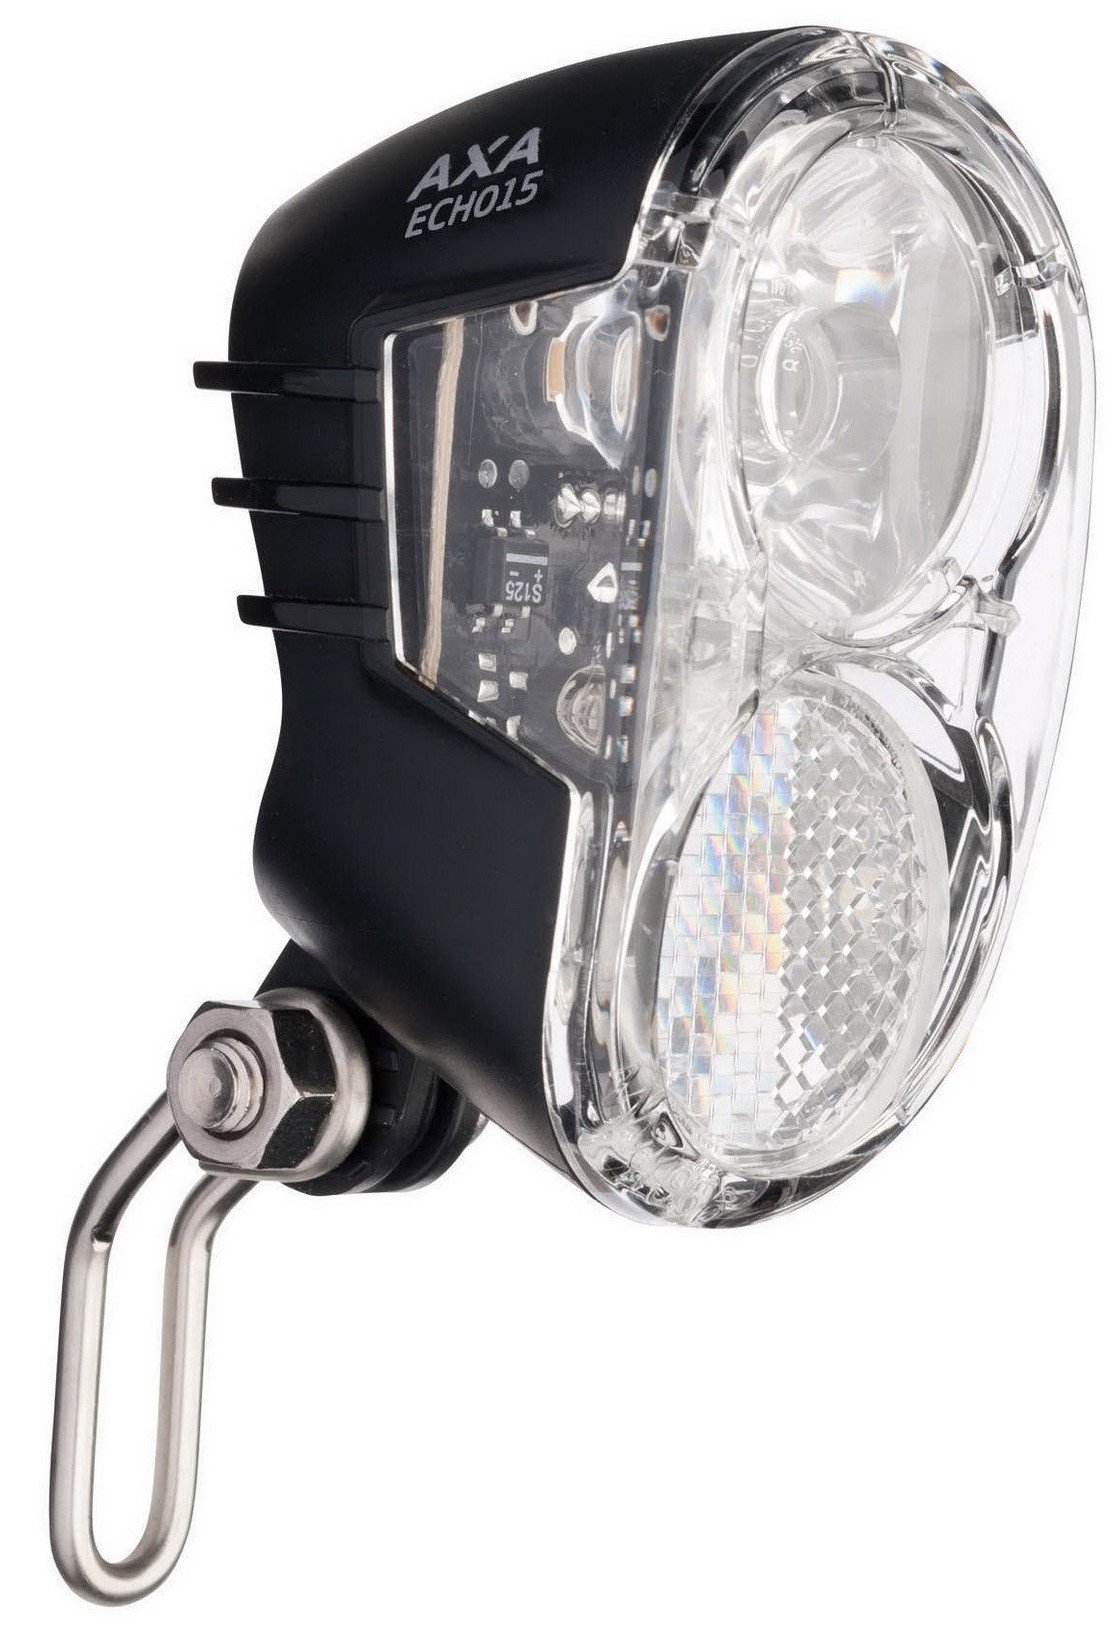 AXA koplamp Echo15 Steady auto 15 lux LED dynamo aan/uit